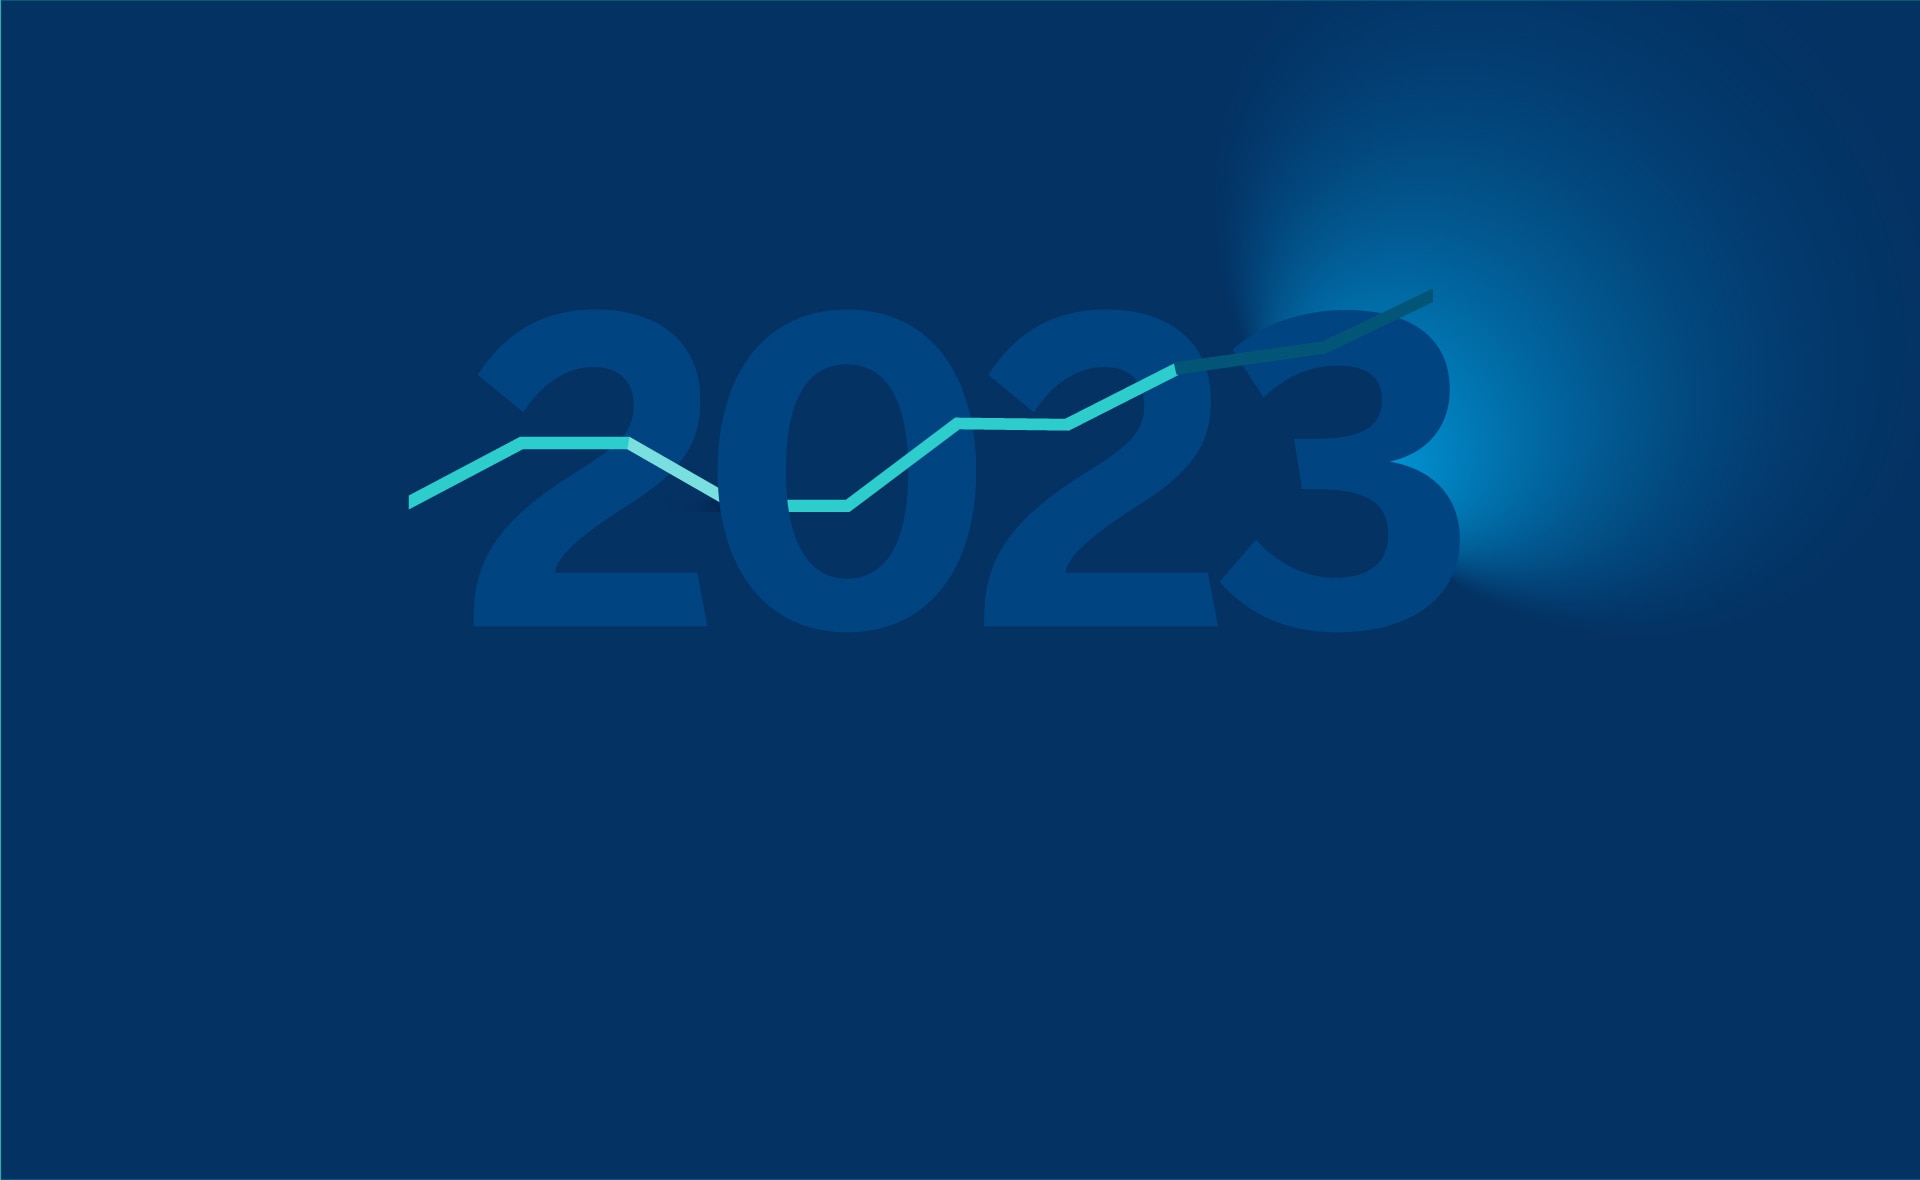 ¿Qué podemos esperar de los mercados financieros en 2023?